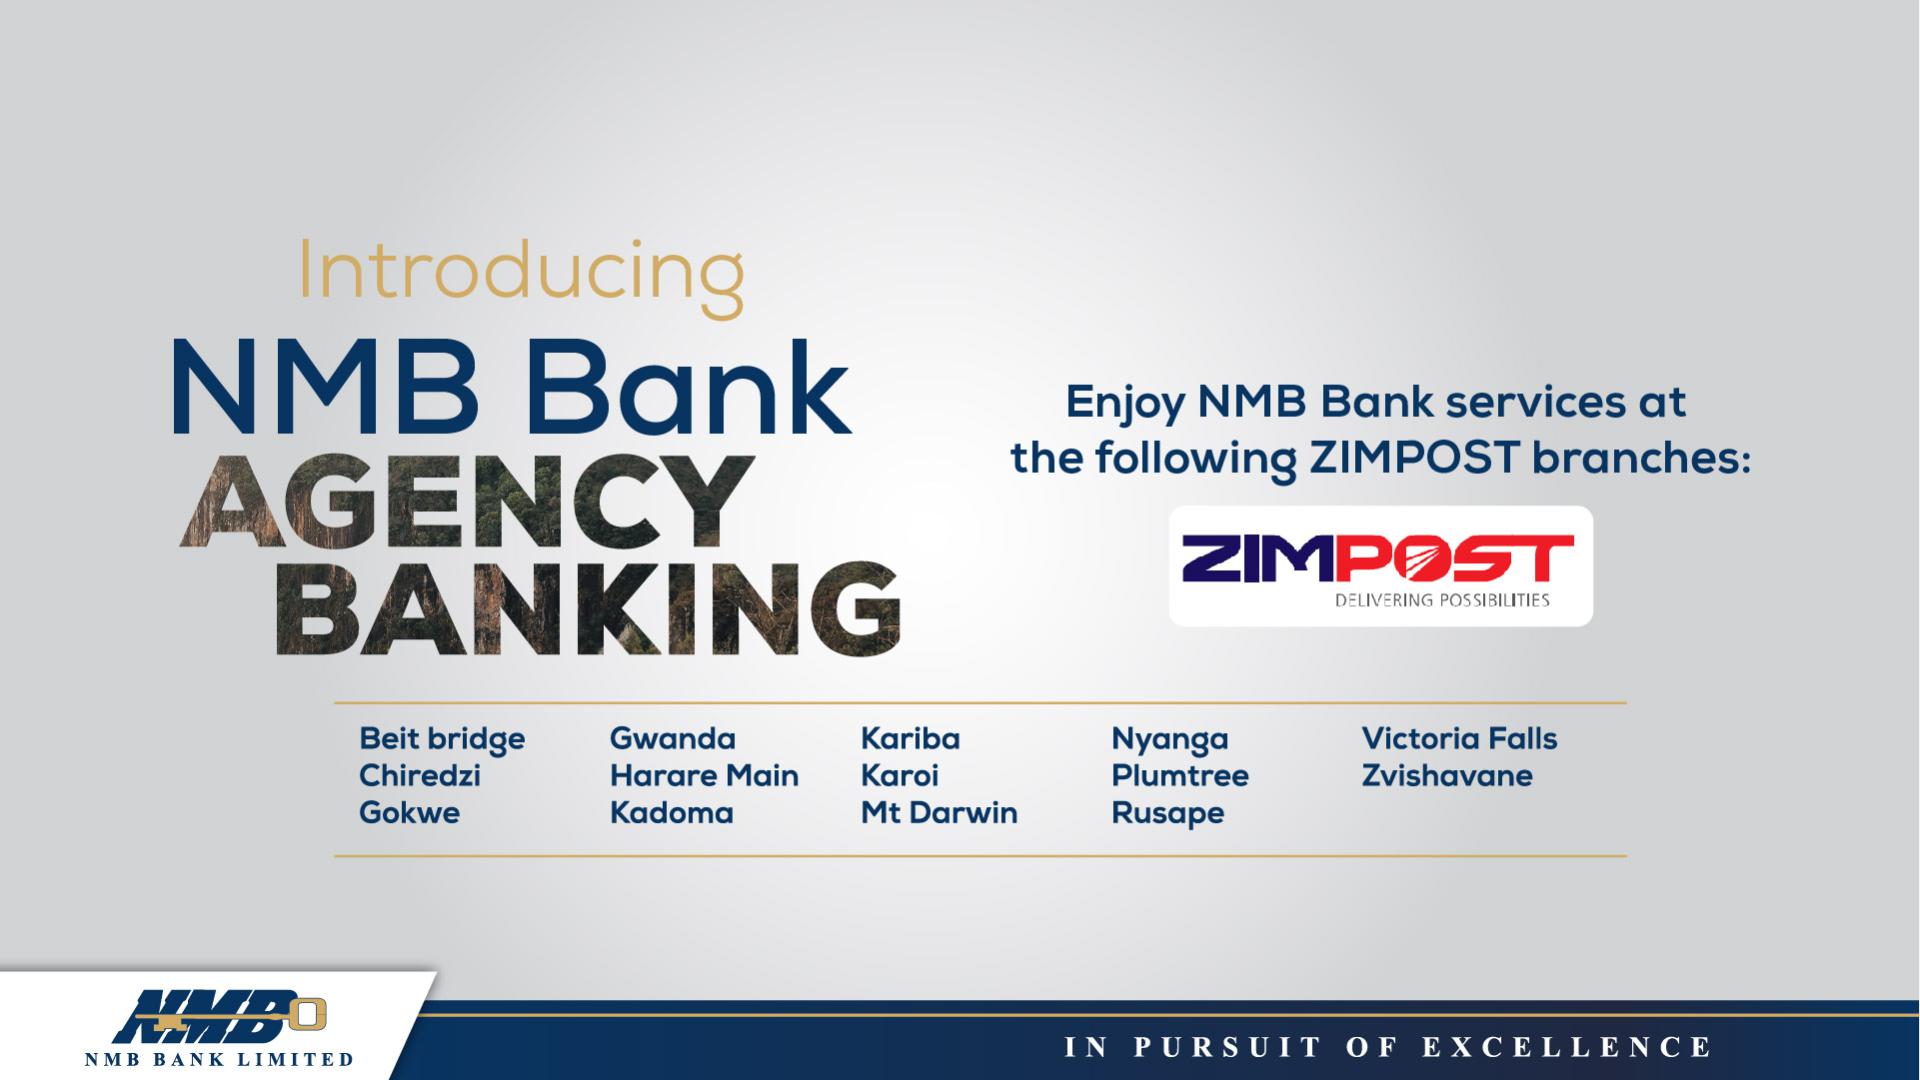 NMB Bank Agency Banking